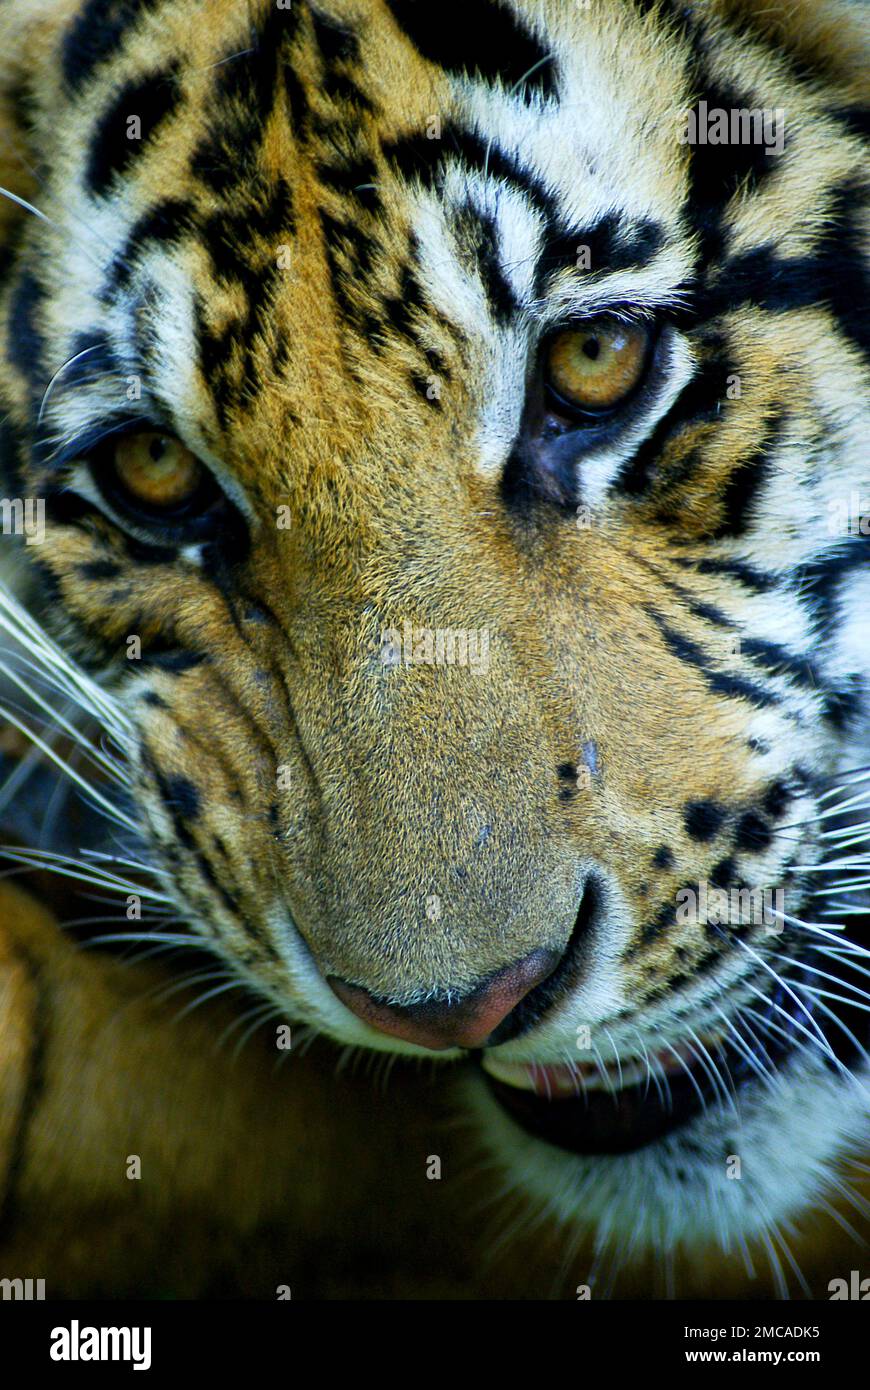 Un tigre sauvage - mignon animal dangereux avec une fourrure moelleuse dépouillée. Banque D'Images